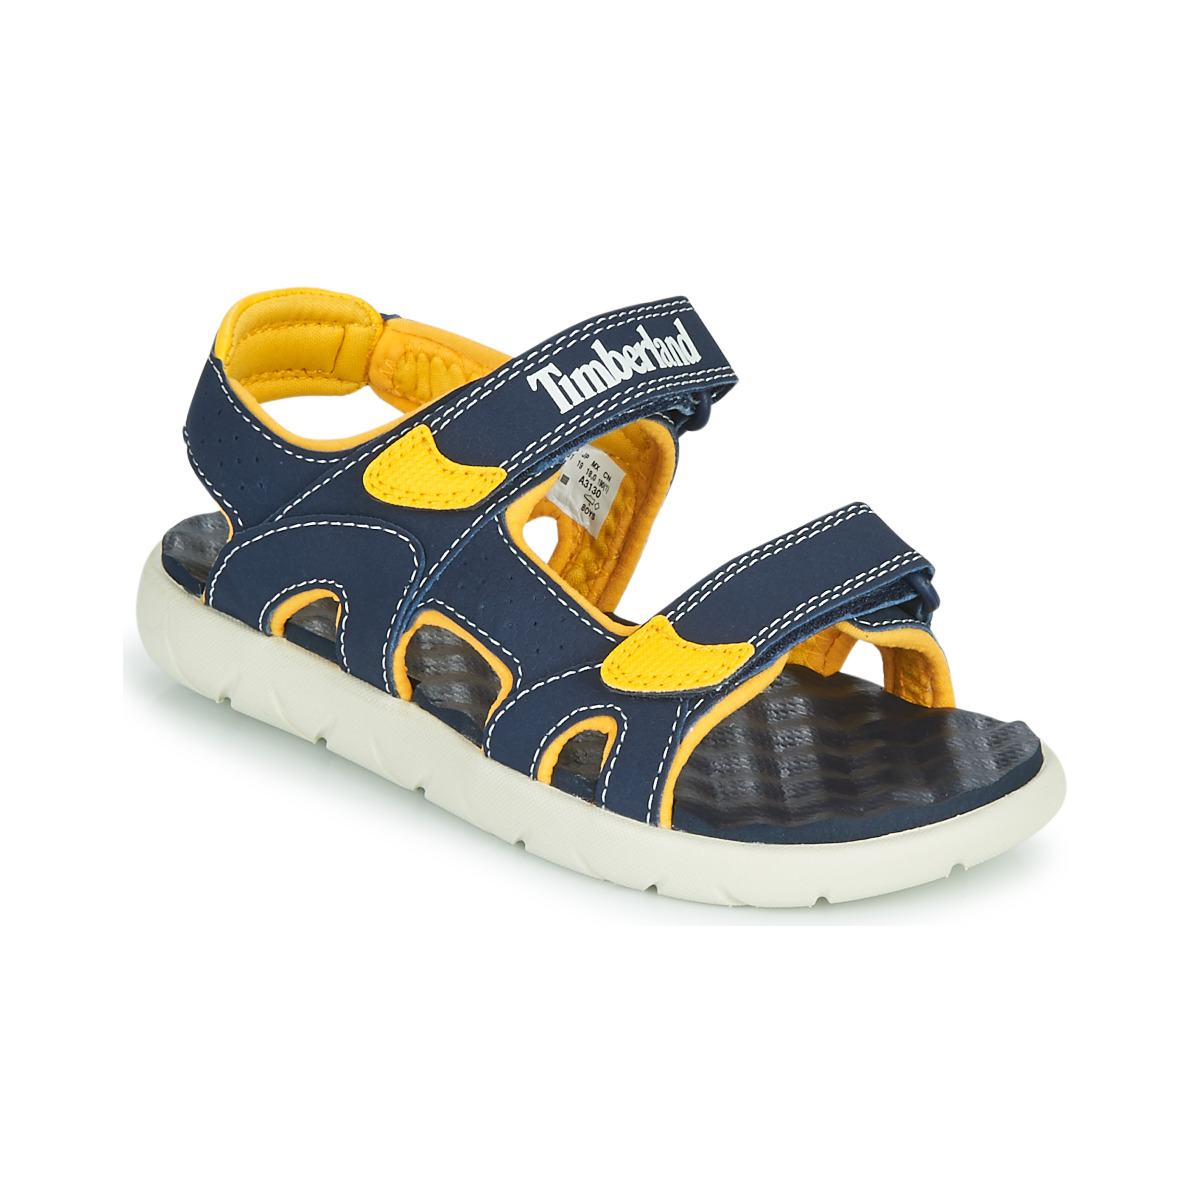 Sapatos Criança Sandálias Timberland PERKINS ROW 2-STRAP Azul / Amarelo